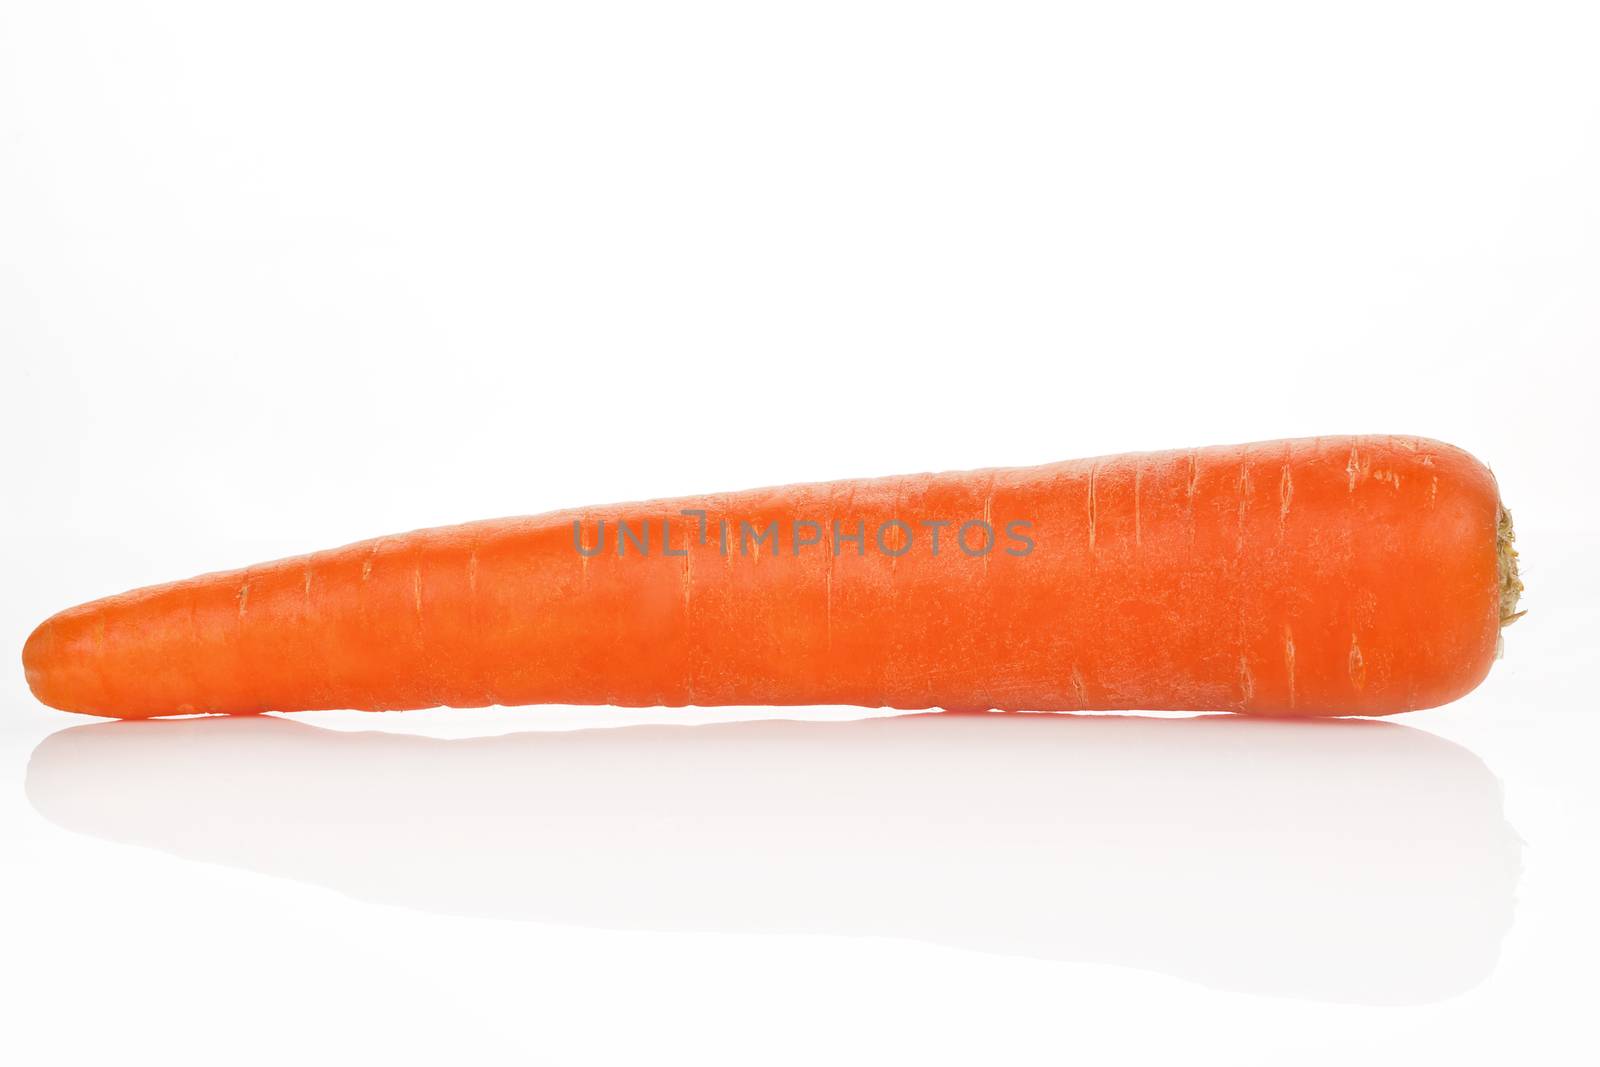 Carrot. by eskymaks